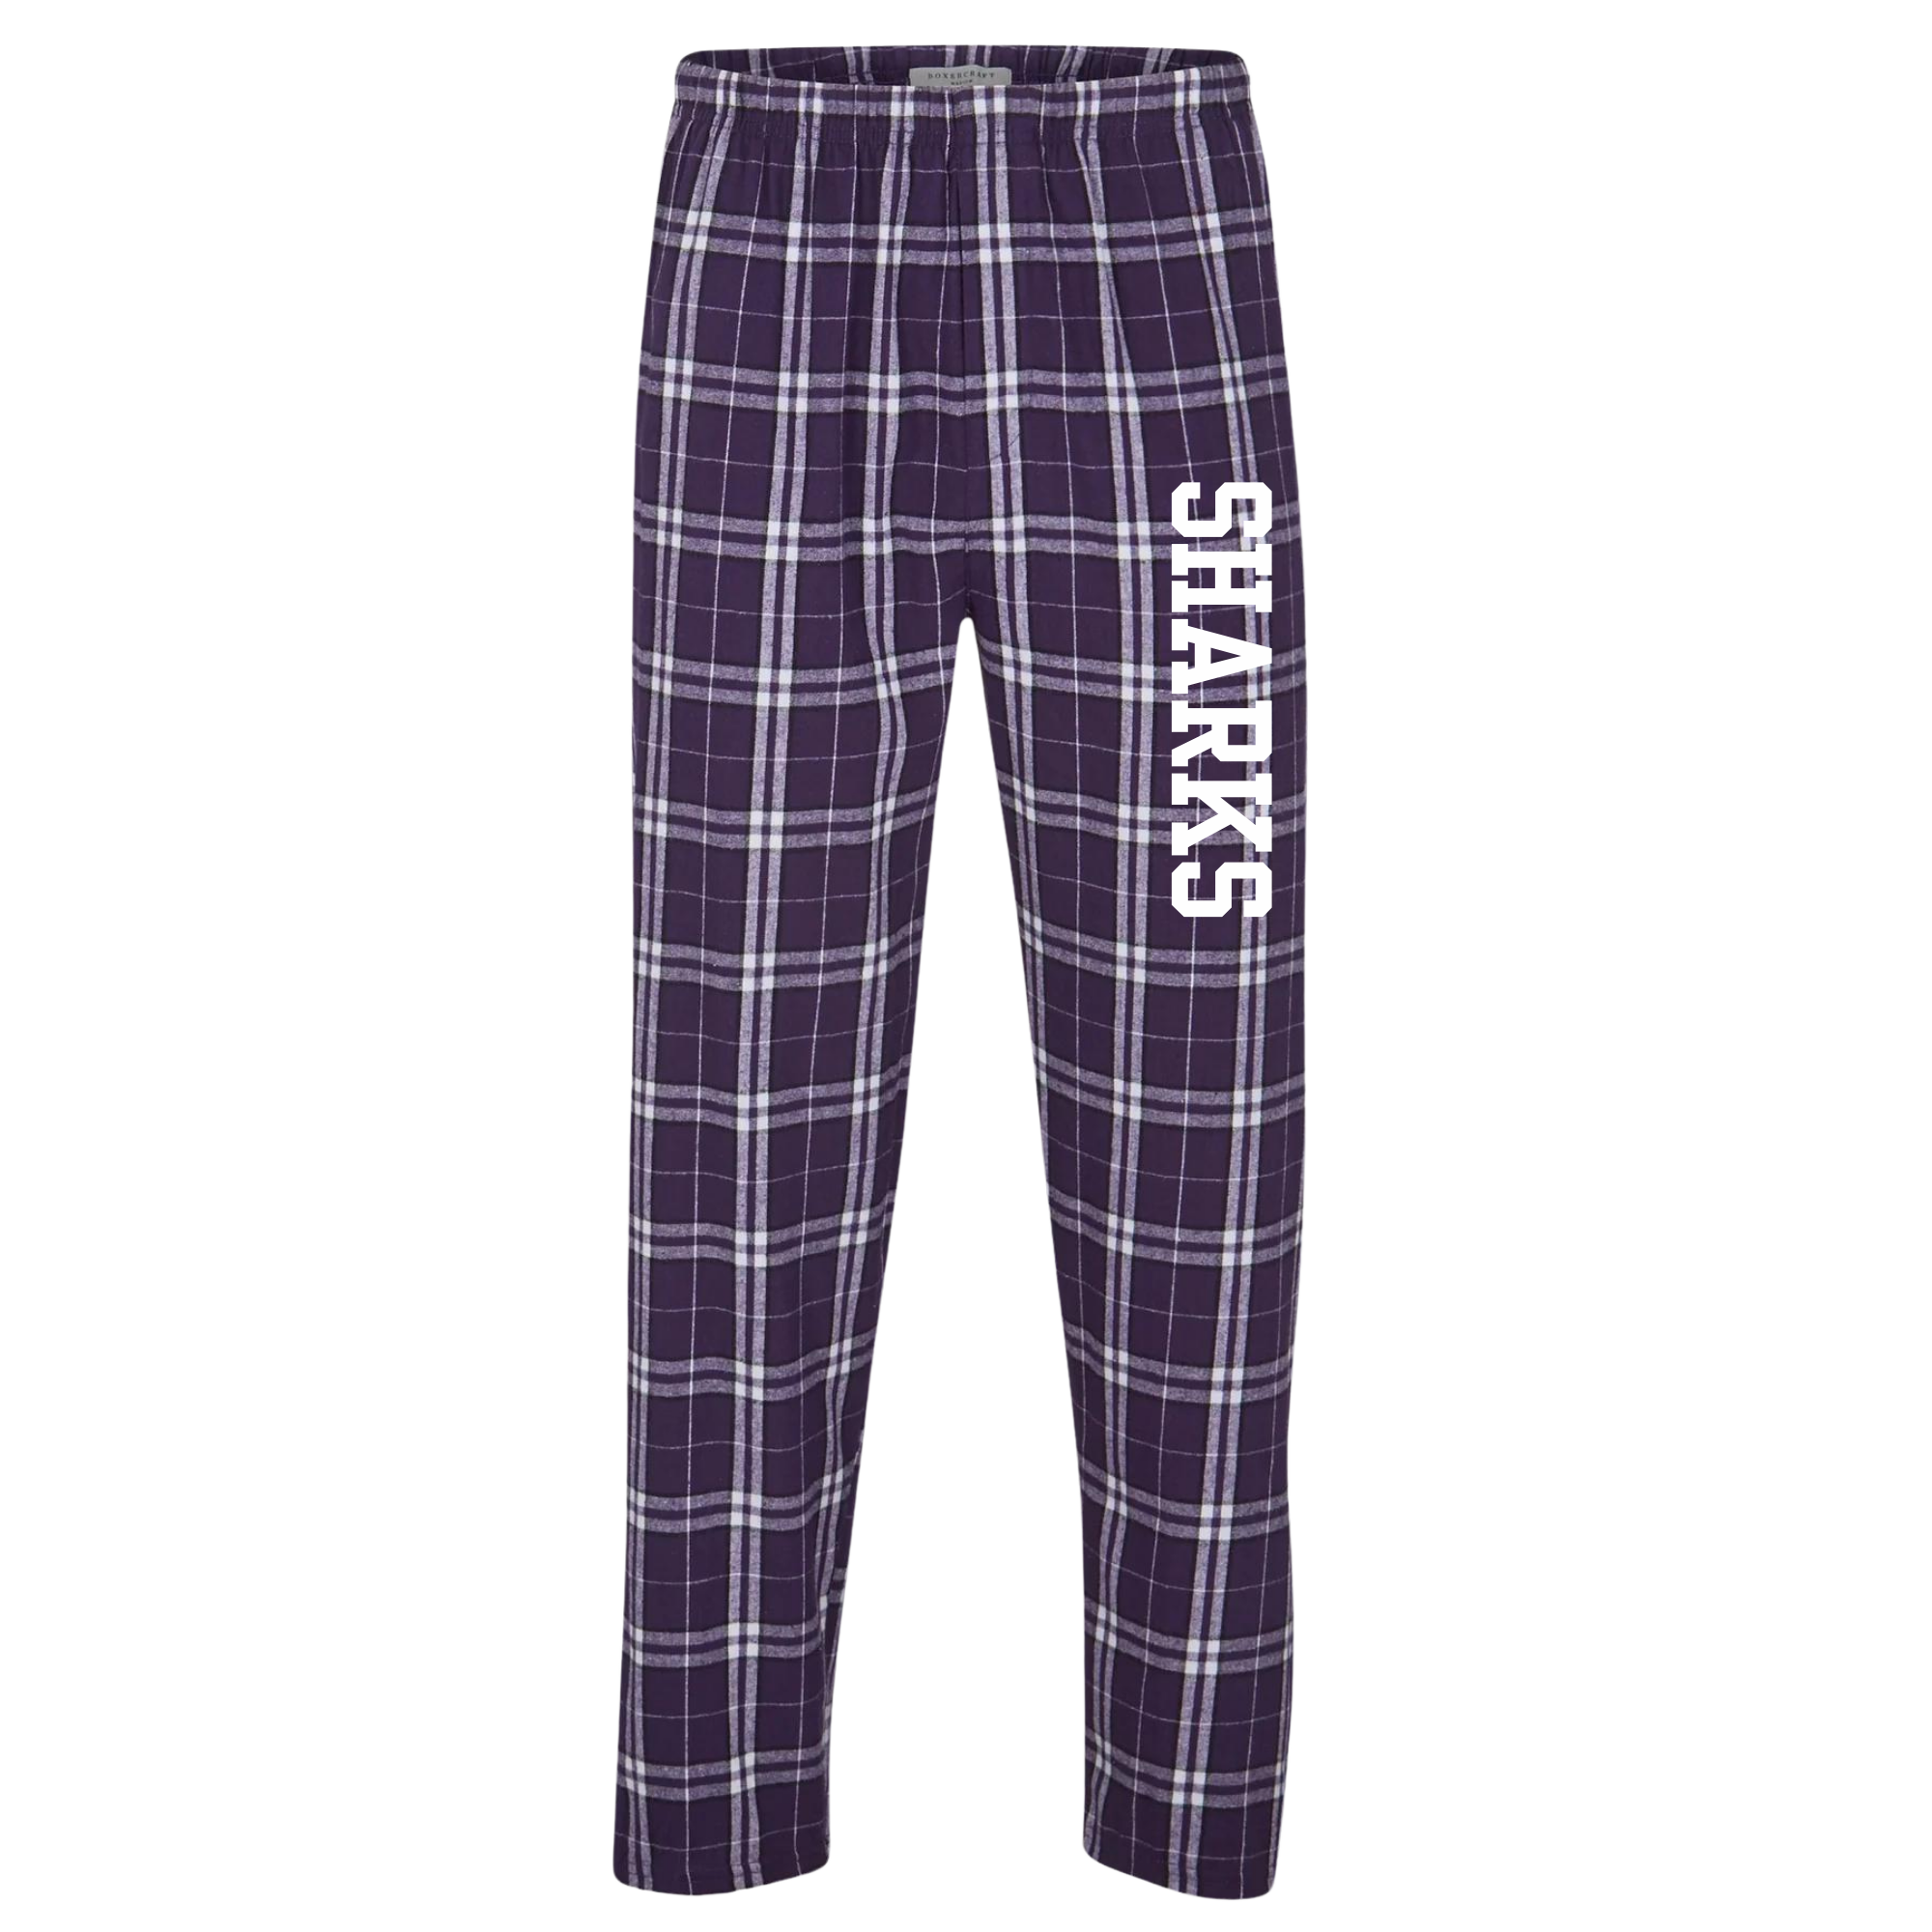 Boxercraft Flannel Pants (Customized) - Smyrna